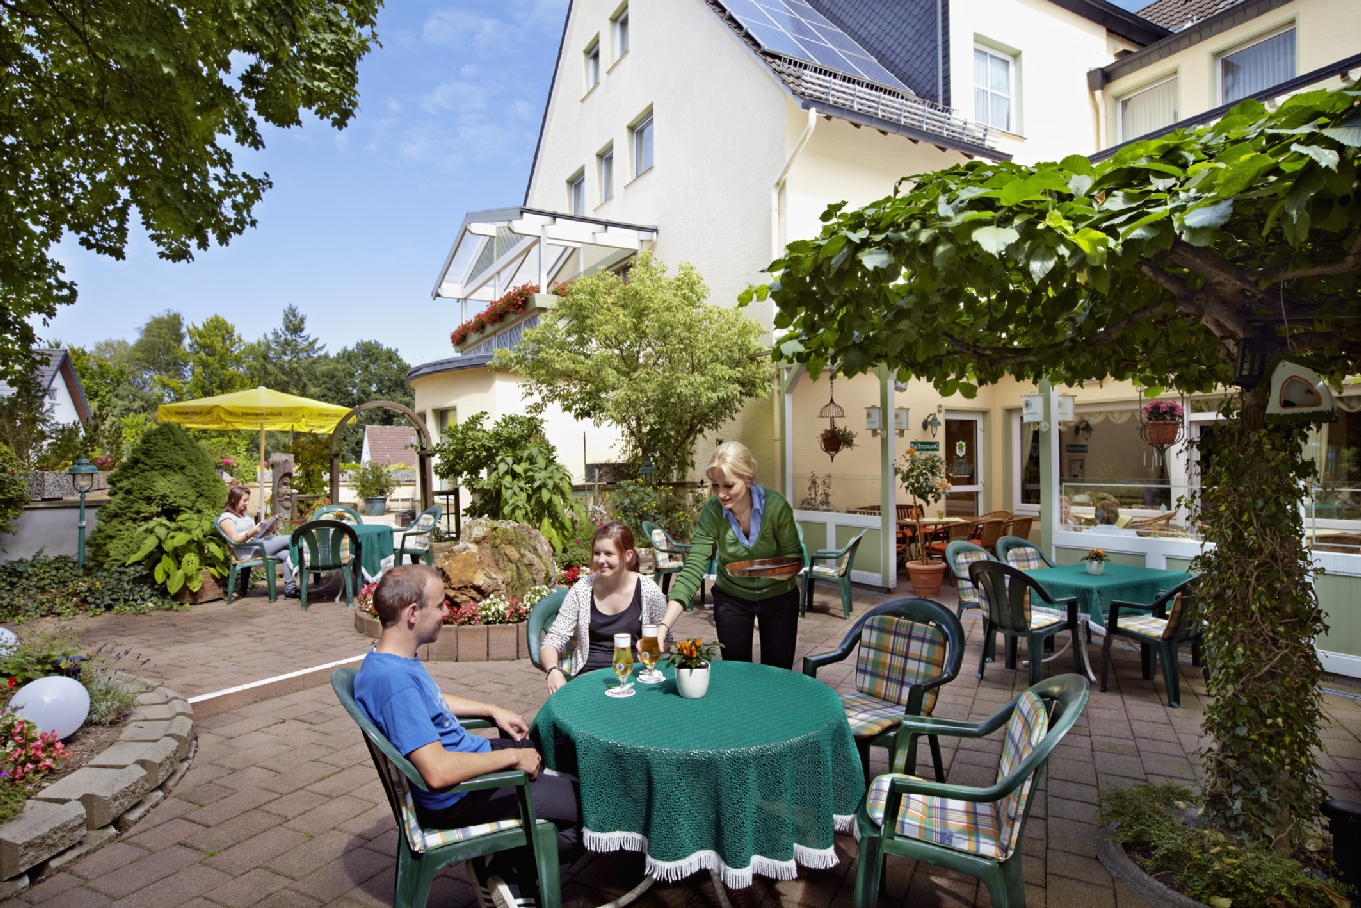 Familienurlaub und Wandern gehören zu einander wie der Sommer und die Sonne in Warstein.